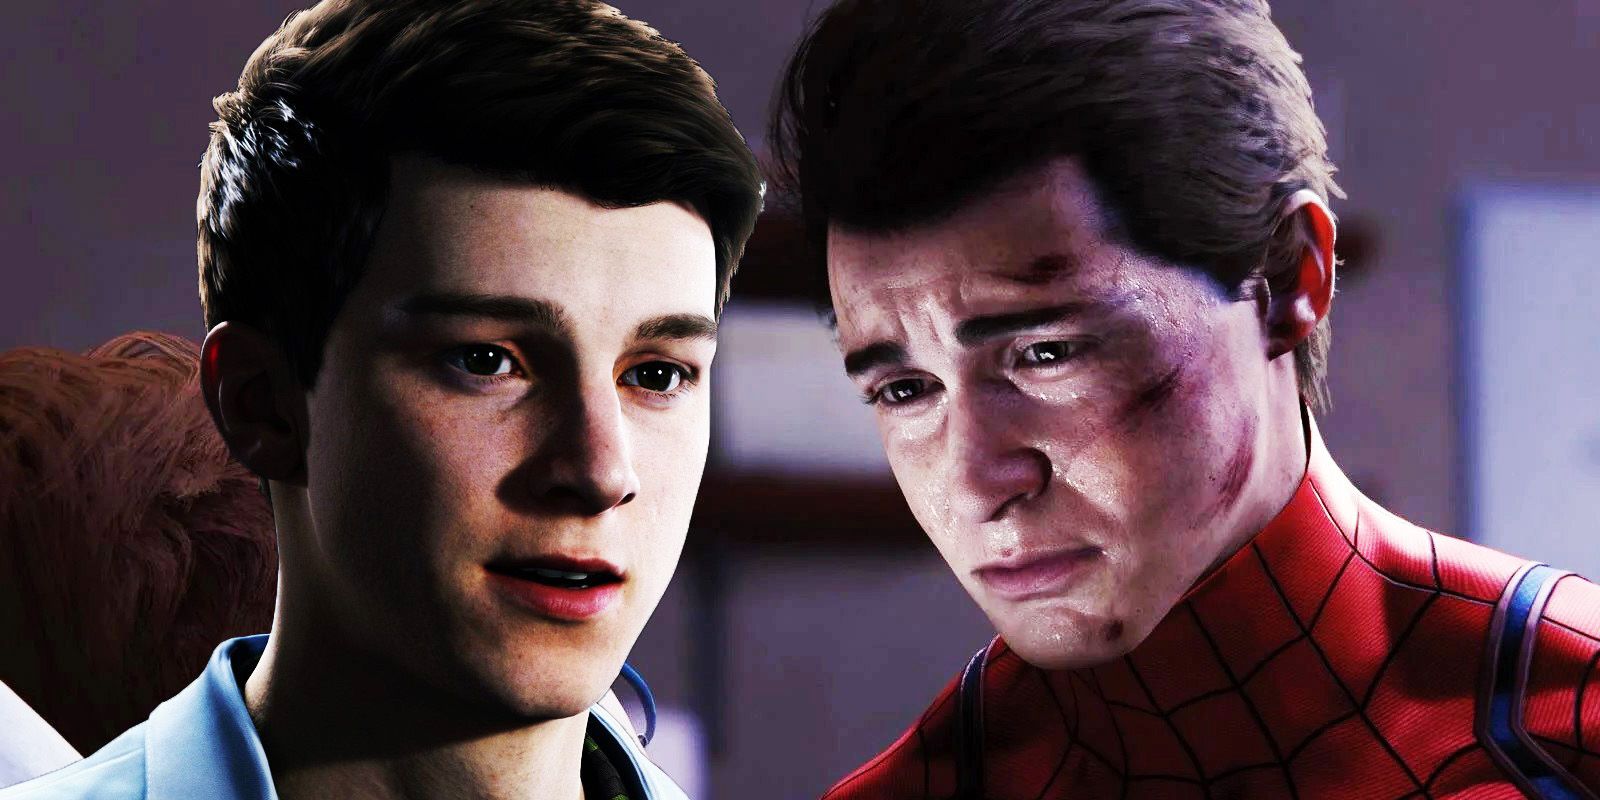 Spider-Man Remastered traz Peter Parker com novo visual e mais